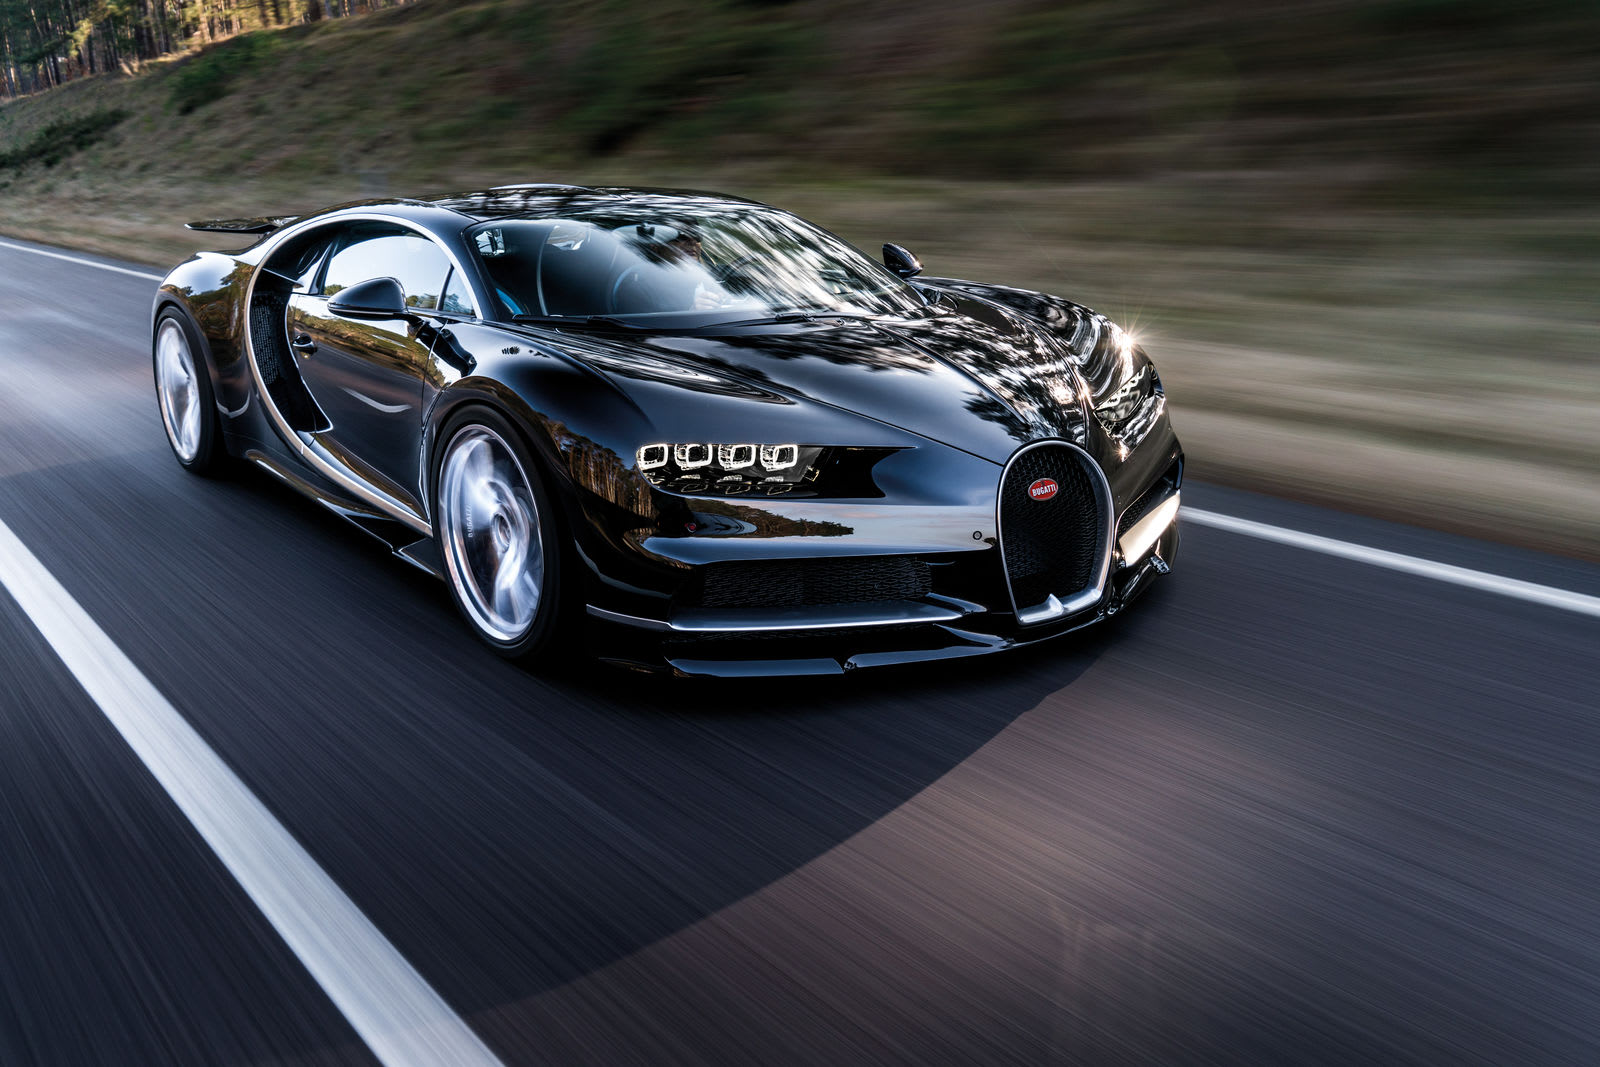 Bugatti hits 305 mph, breaks supercar speed record